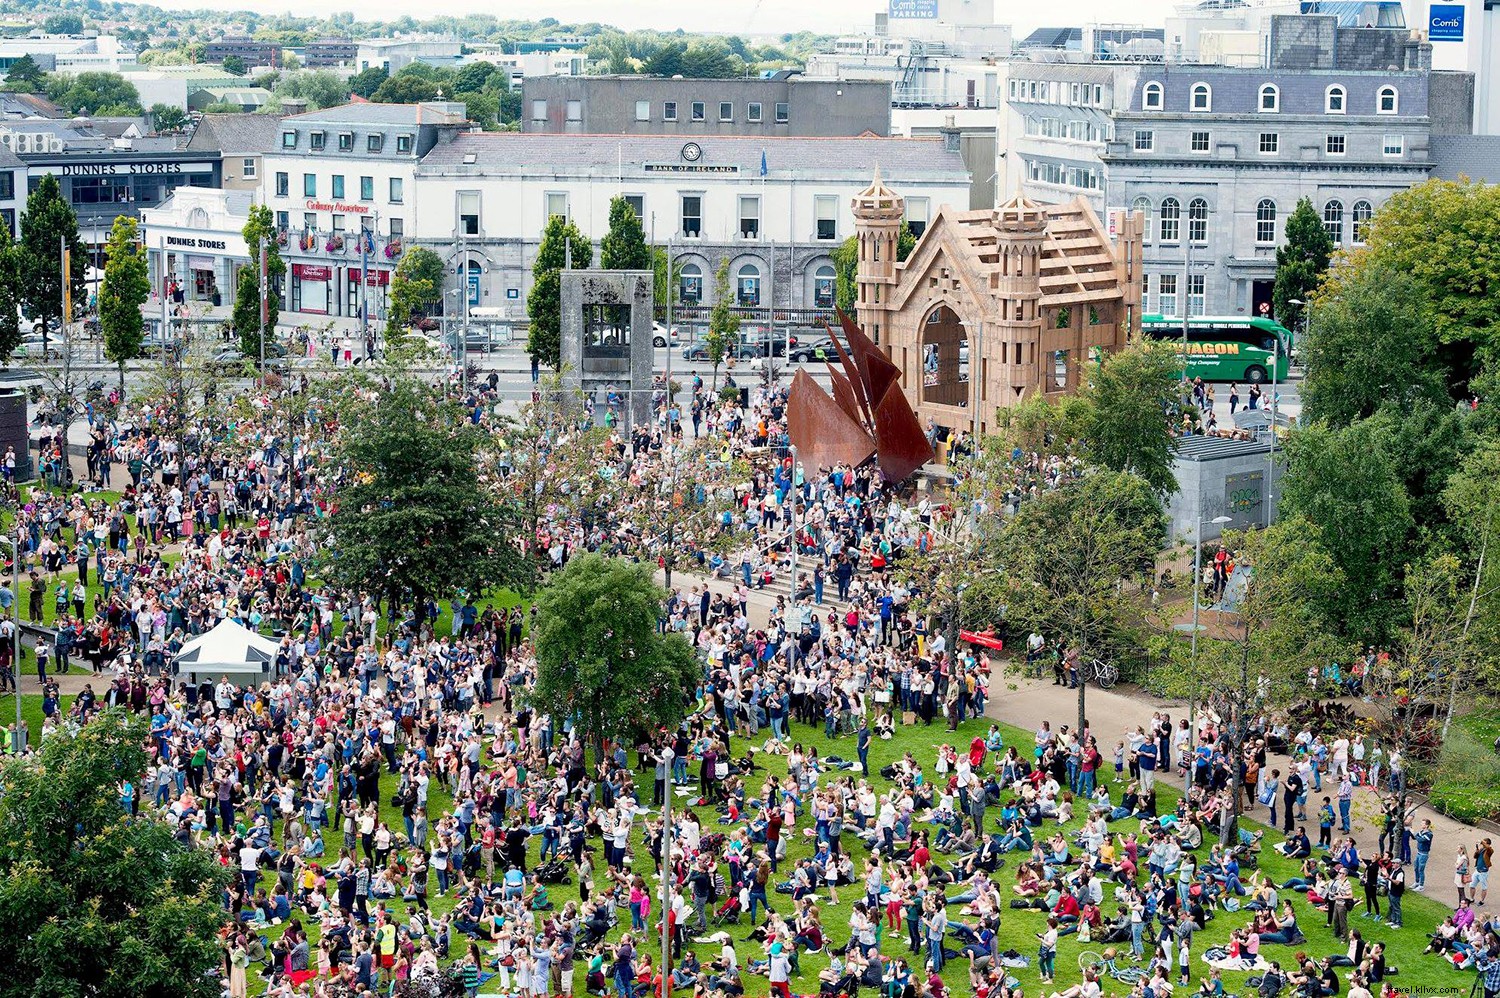 8 coisas que você precisa saber sobre o Galway International Arts Festival 